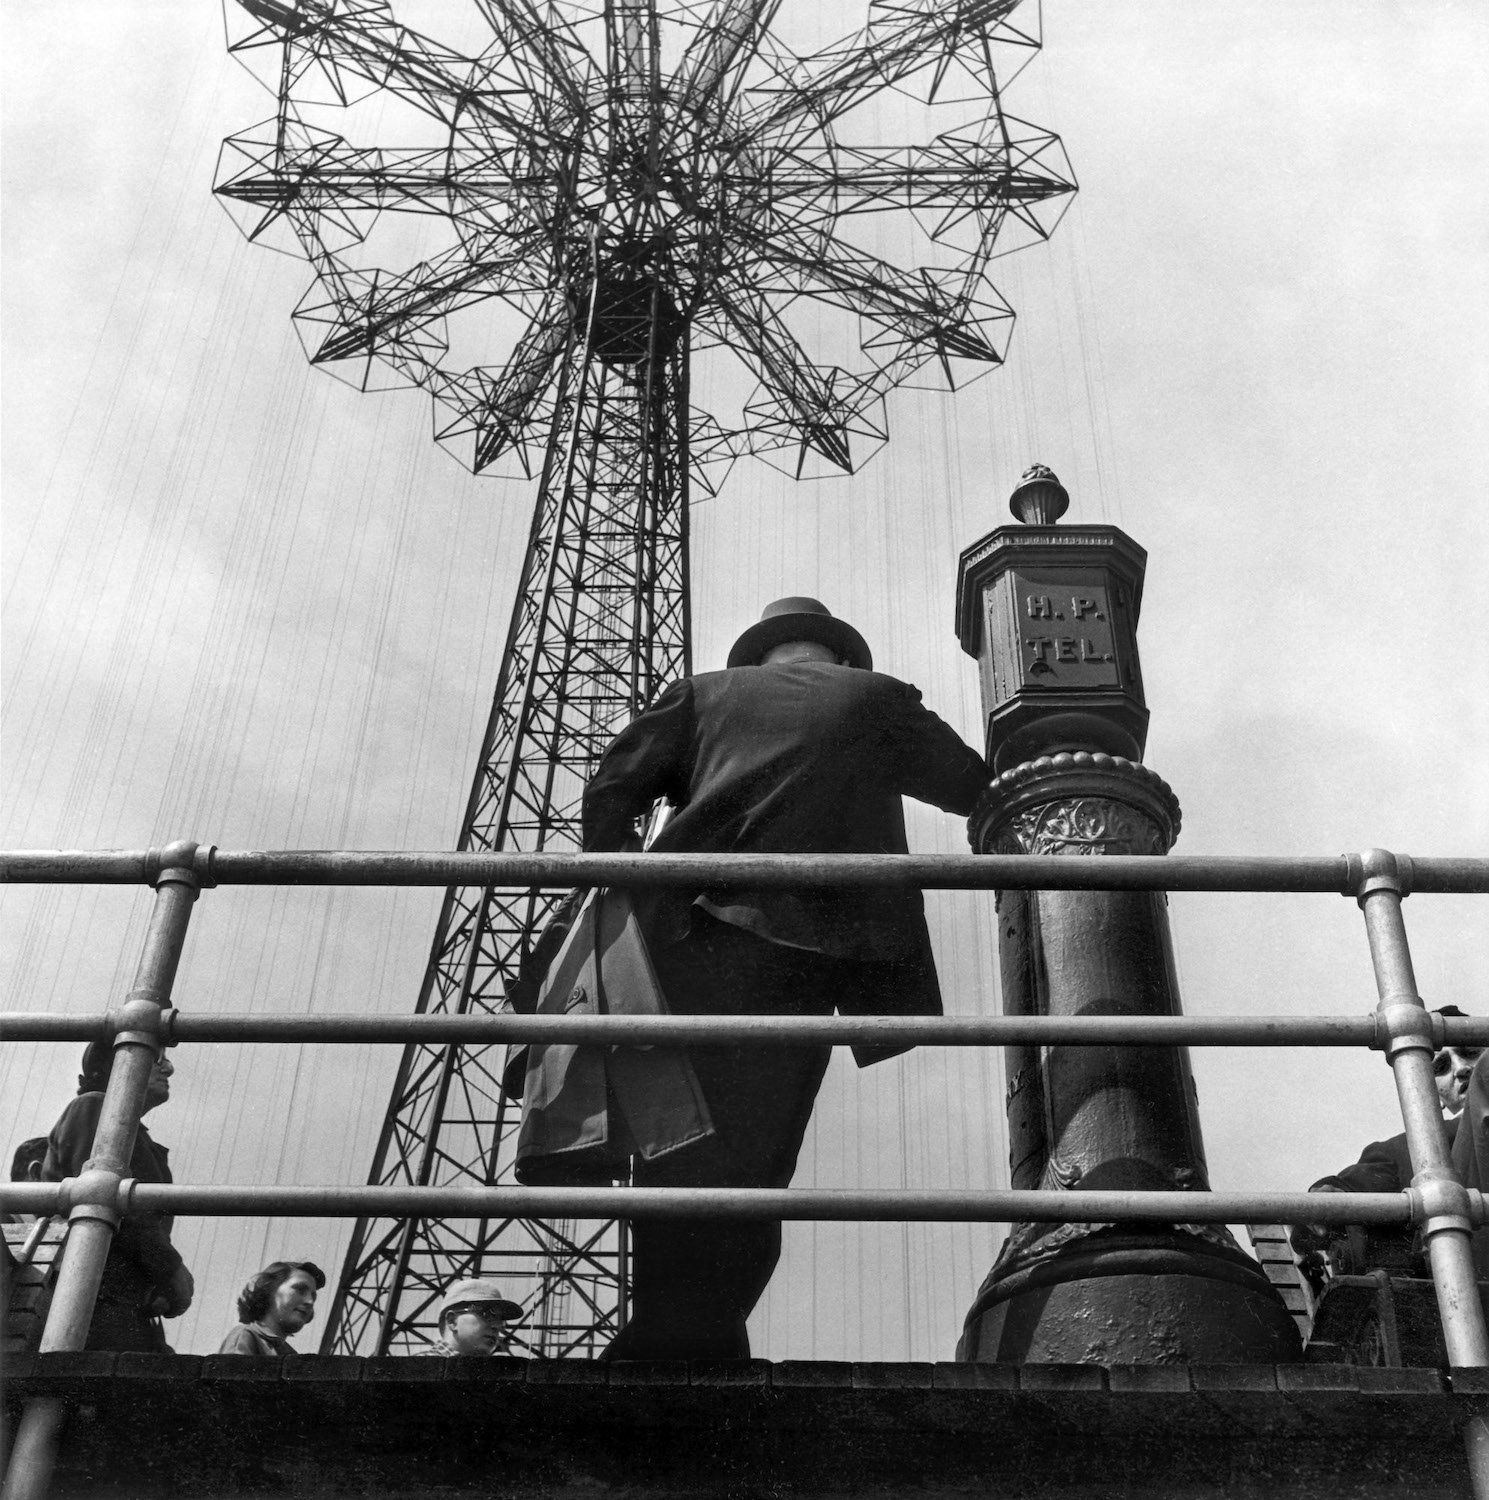 HAROLD FEINSTEIN, MAN AT PARACHUTE JUMP, 1949, COURTESY BIGAIGNON